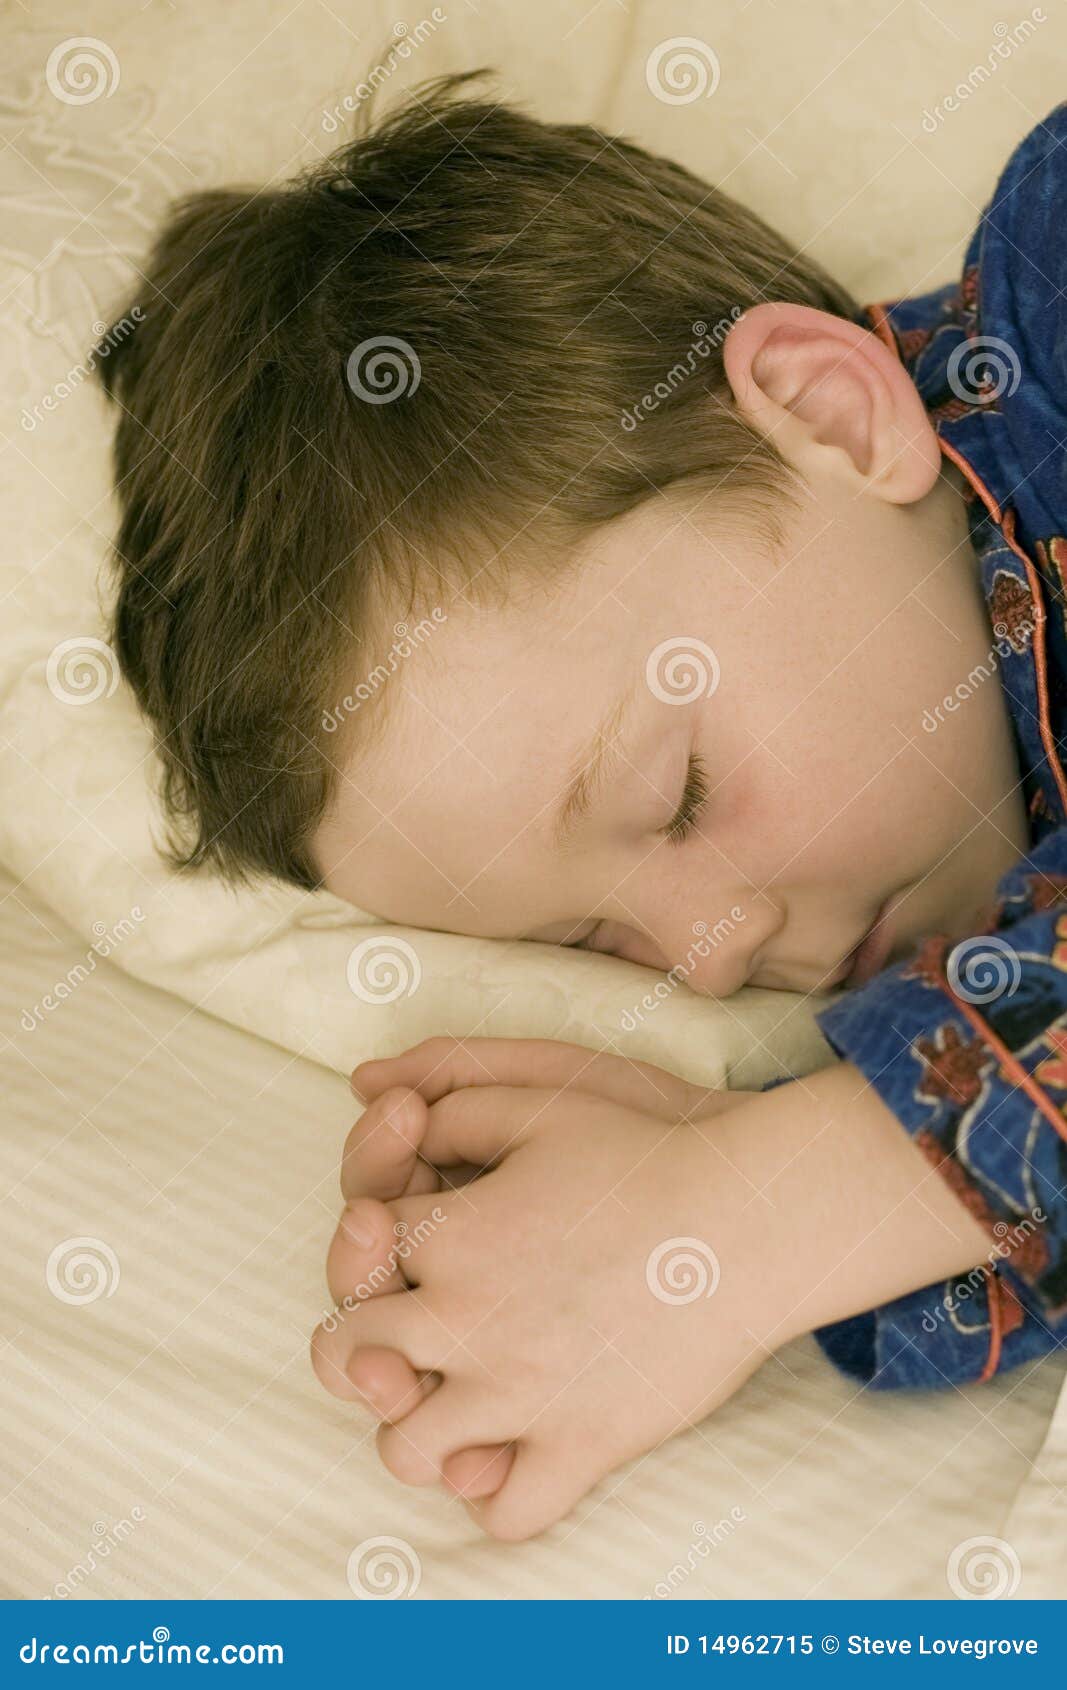 Спящему мальчику сняли трусы. Уснувший мальчик. Кровать для мальчика. Фото пятилетнего мальчика спящего.